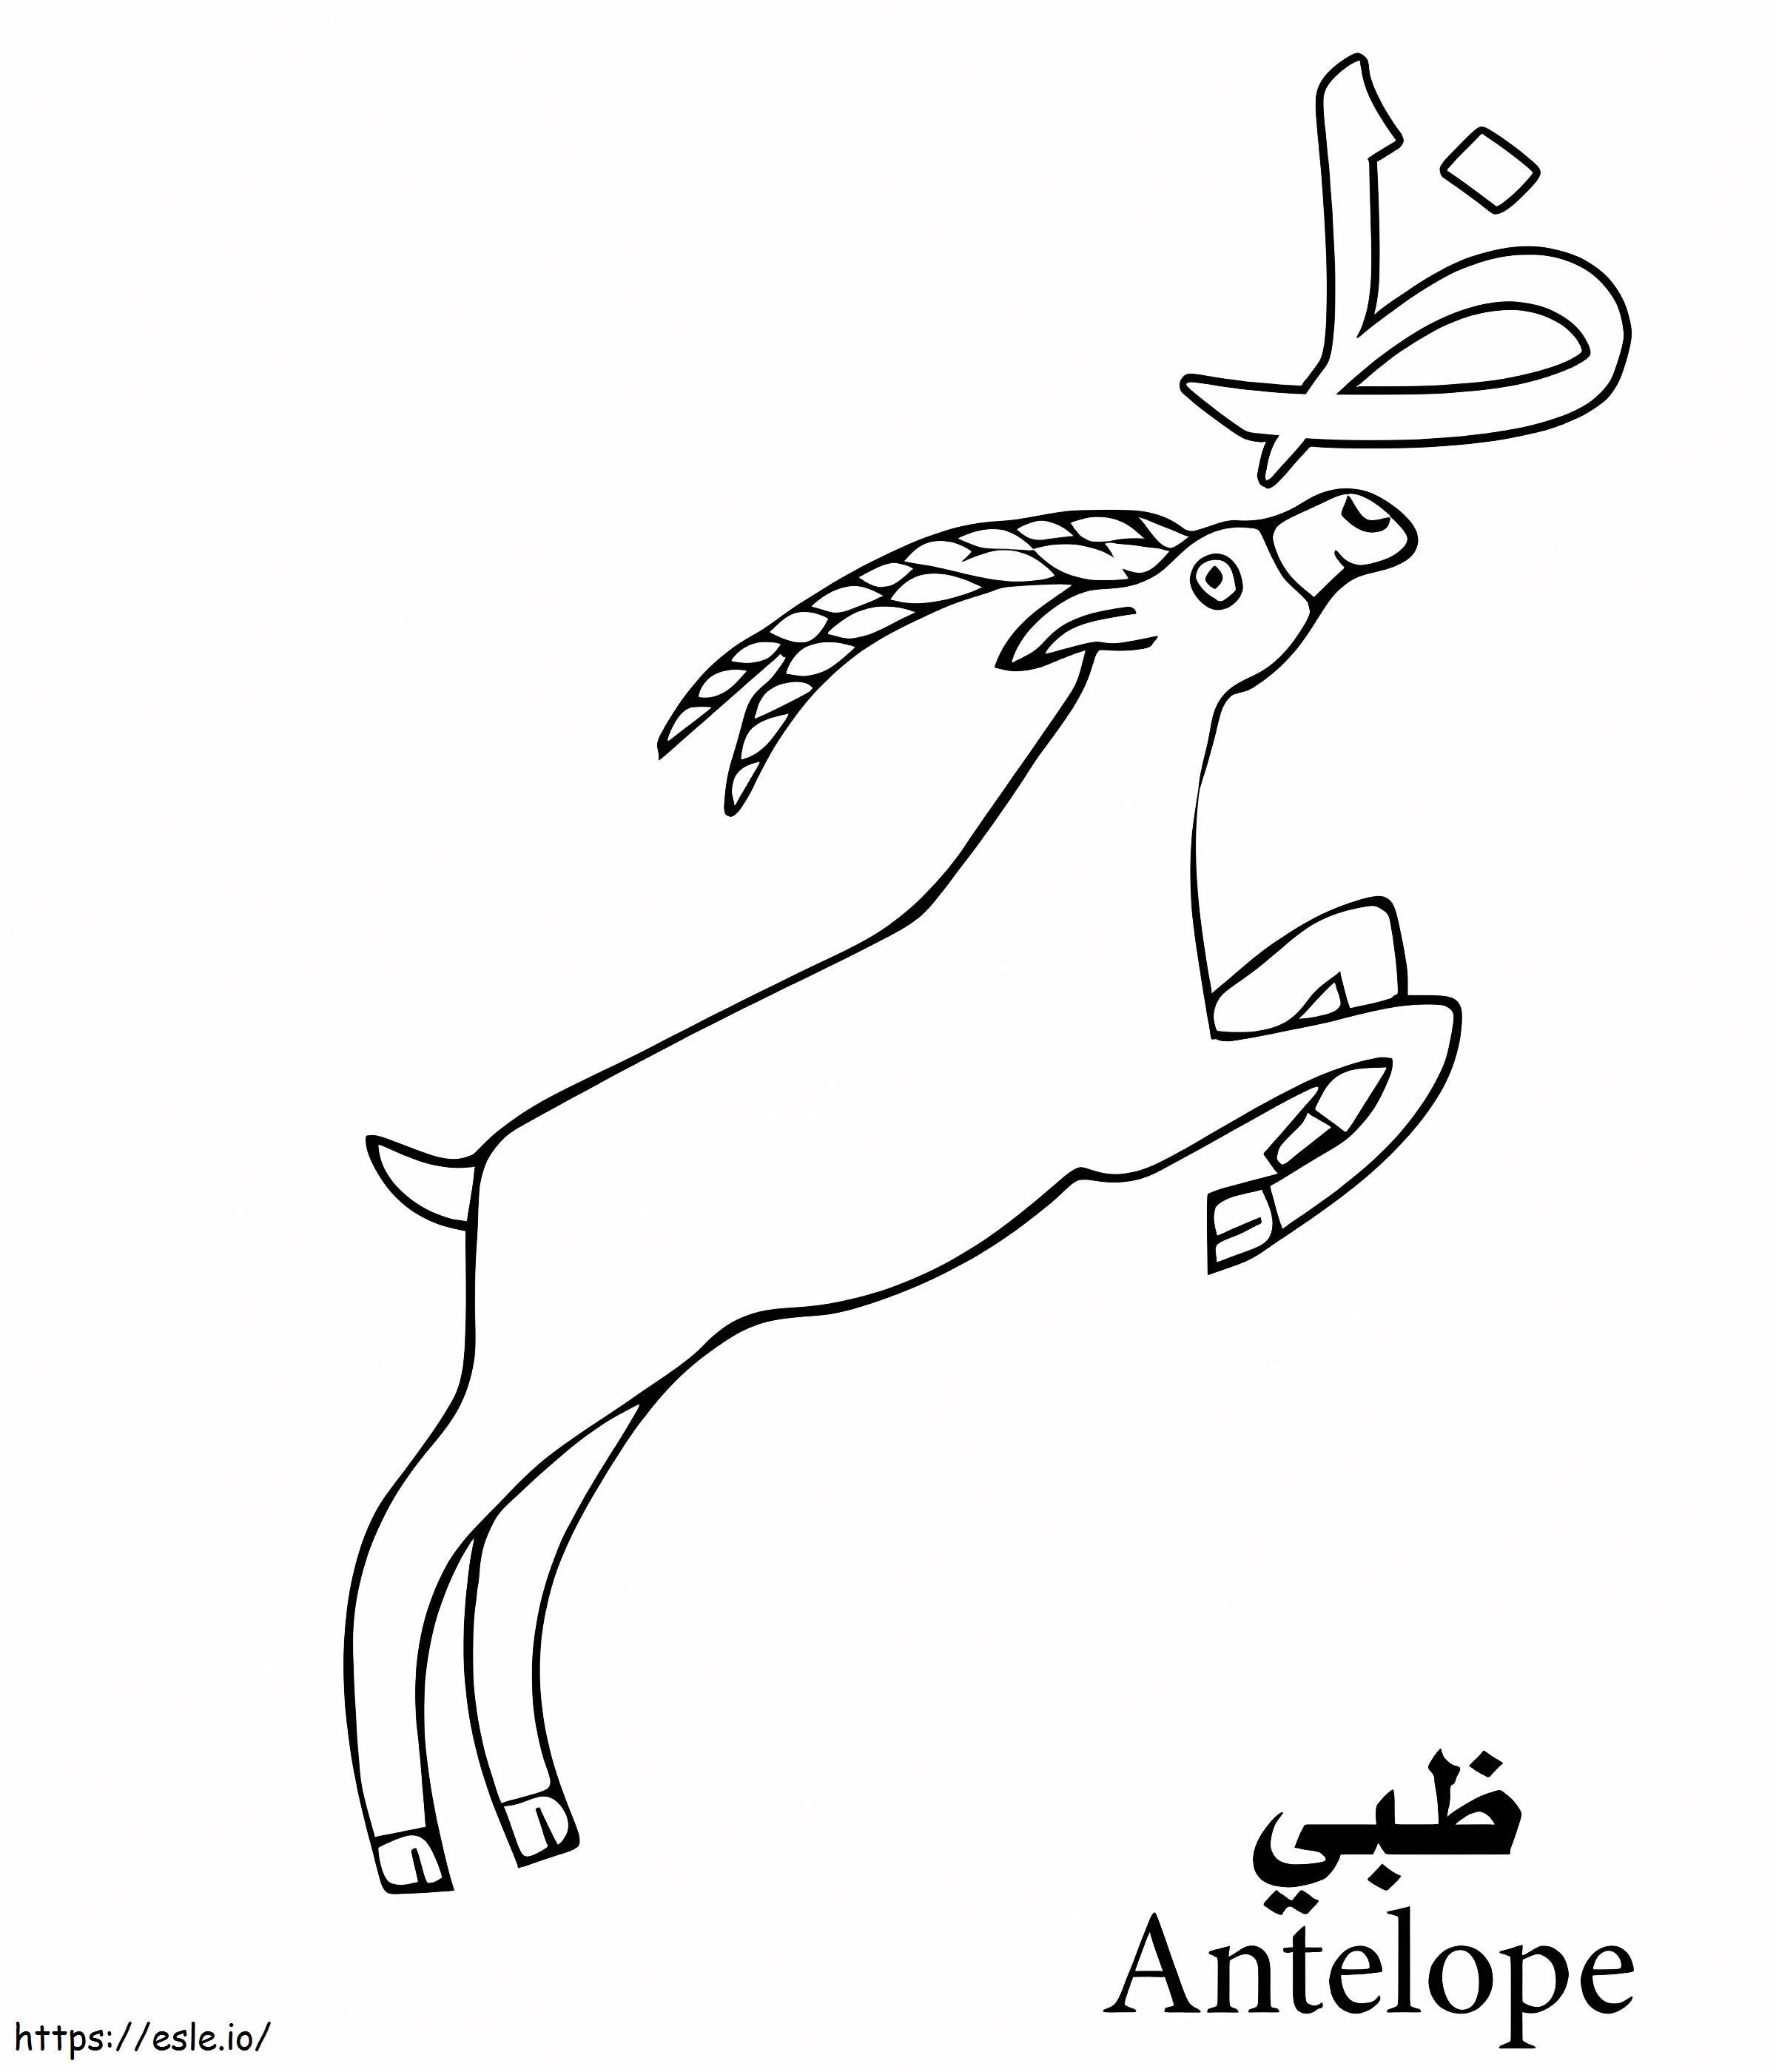 Arabisches Antilopen-Alphabet ausmalbilder